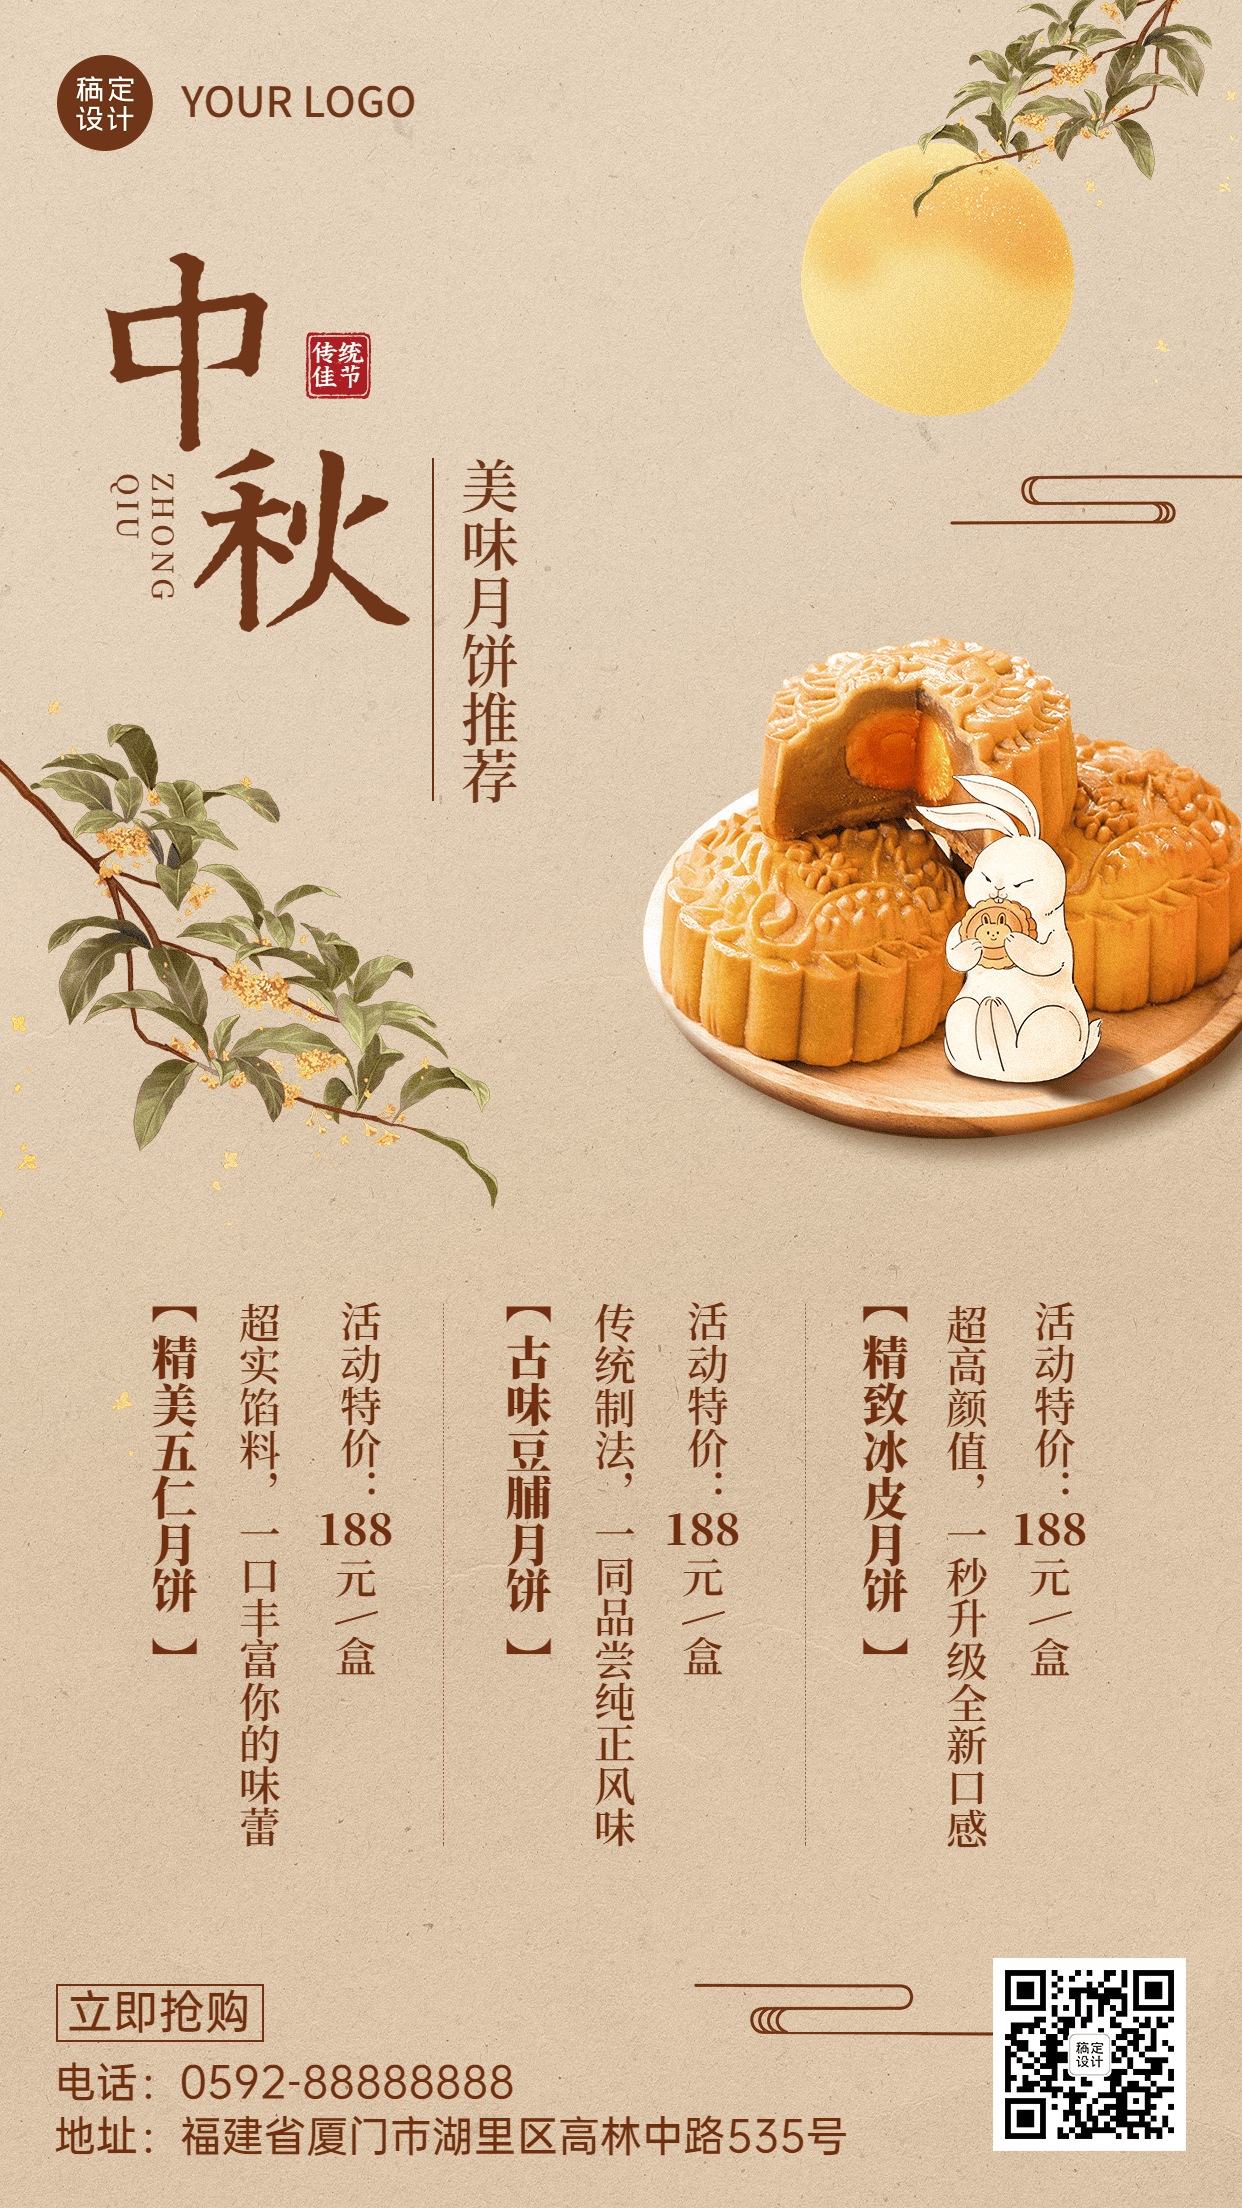 中秋节月饼产品营销宣传中国风手机海报预览效果